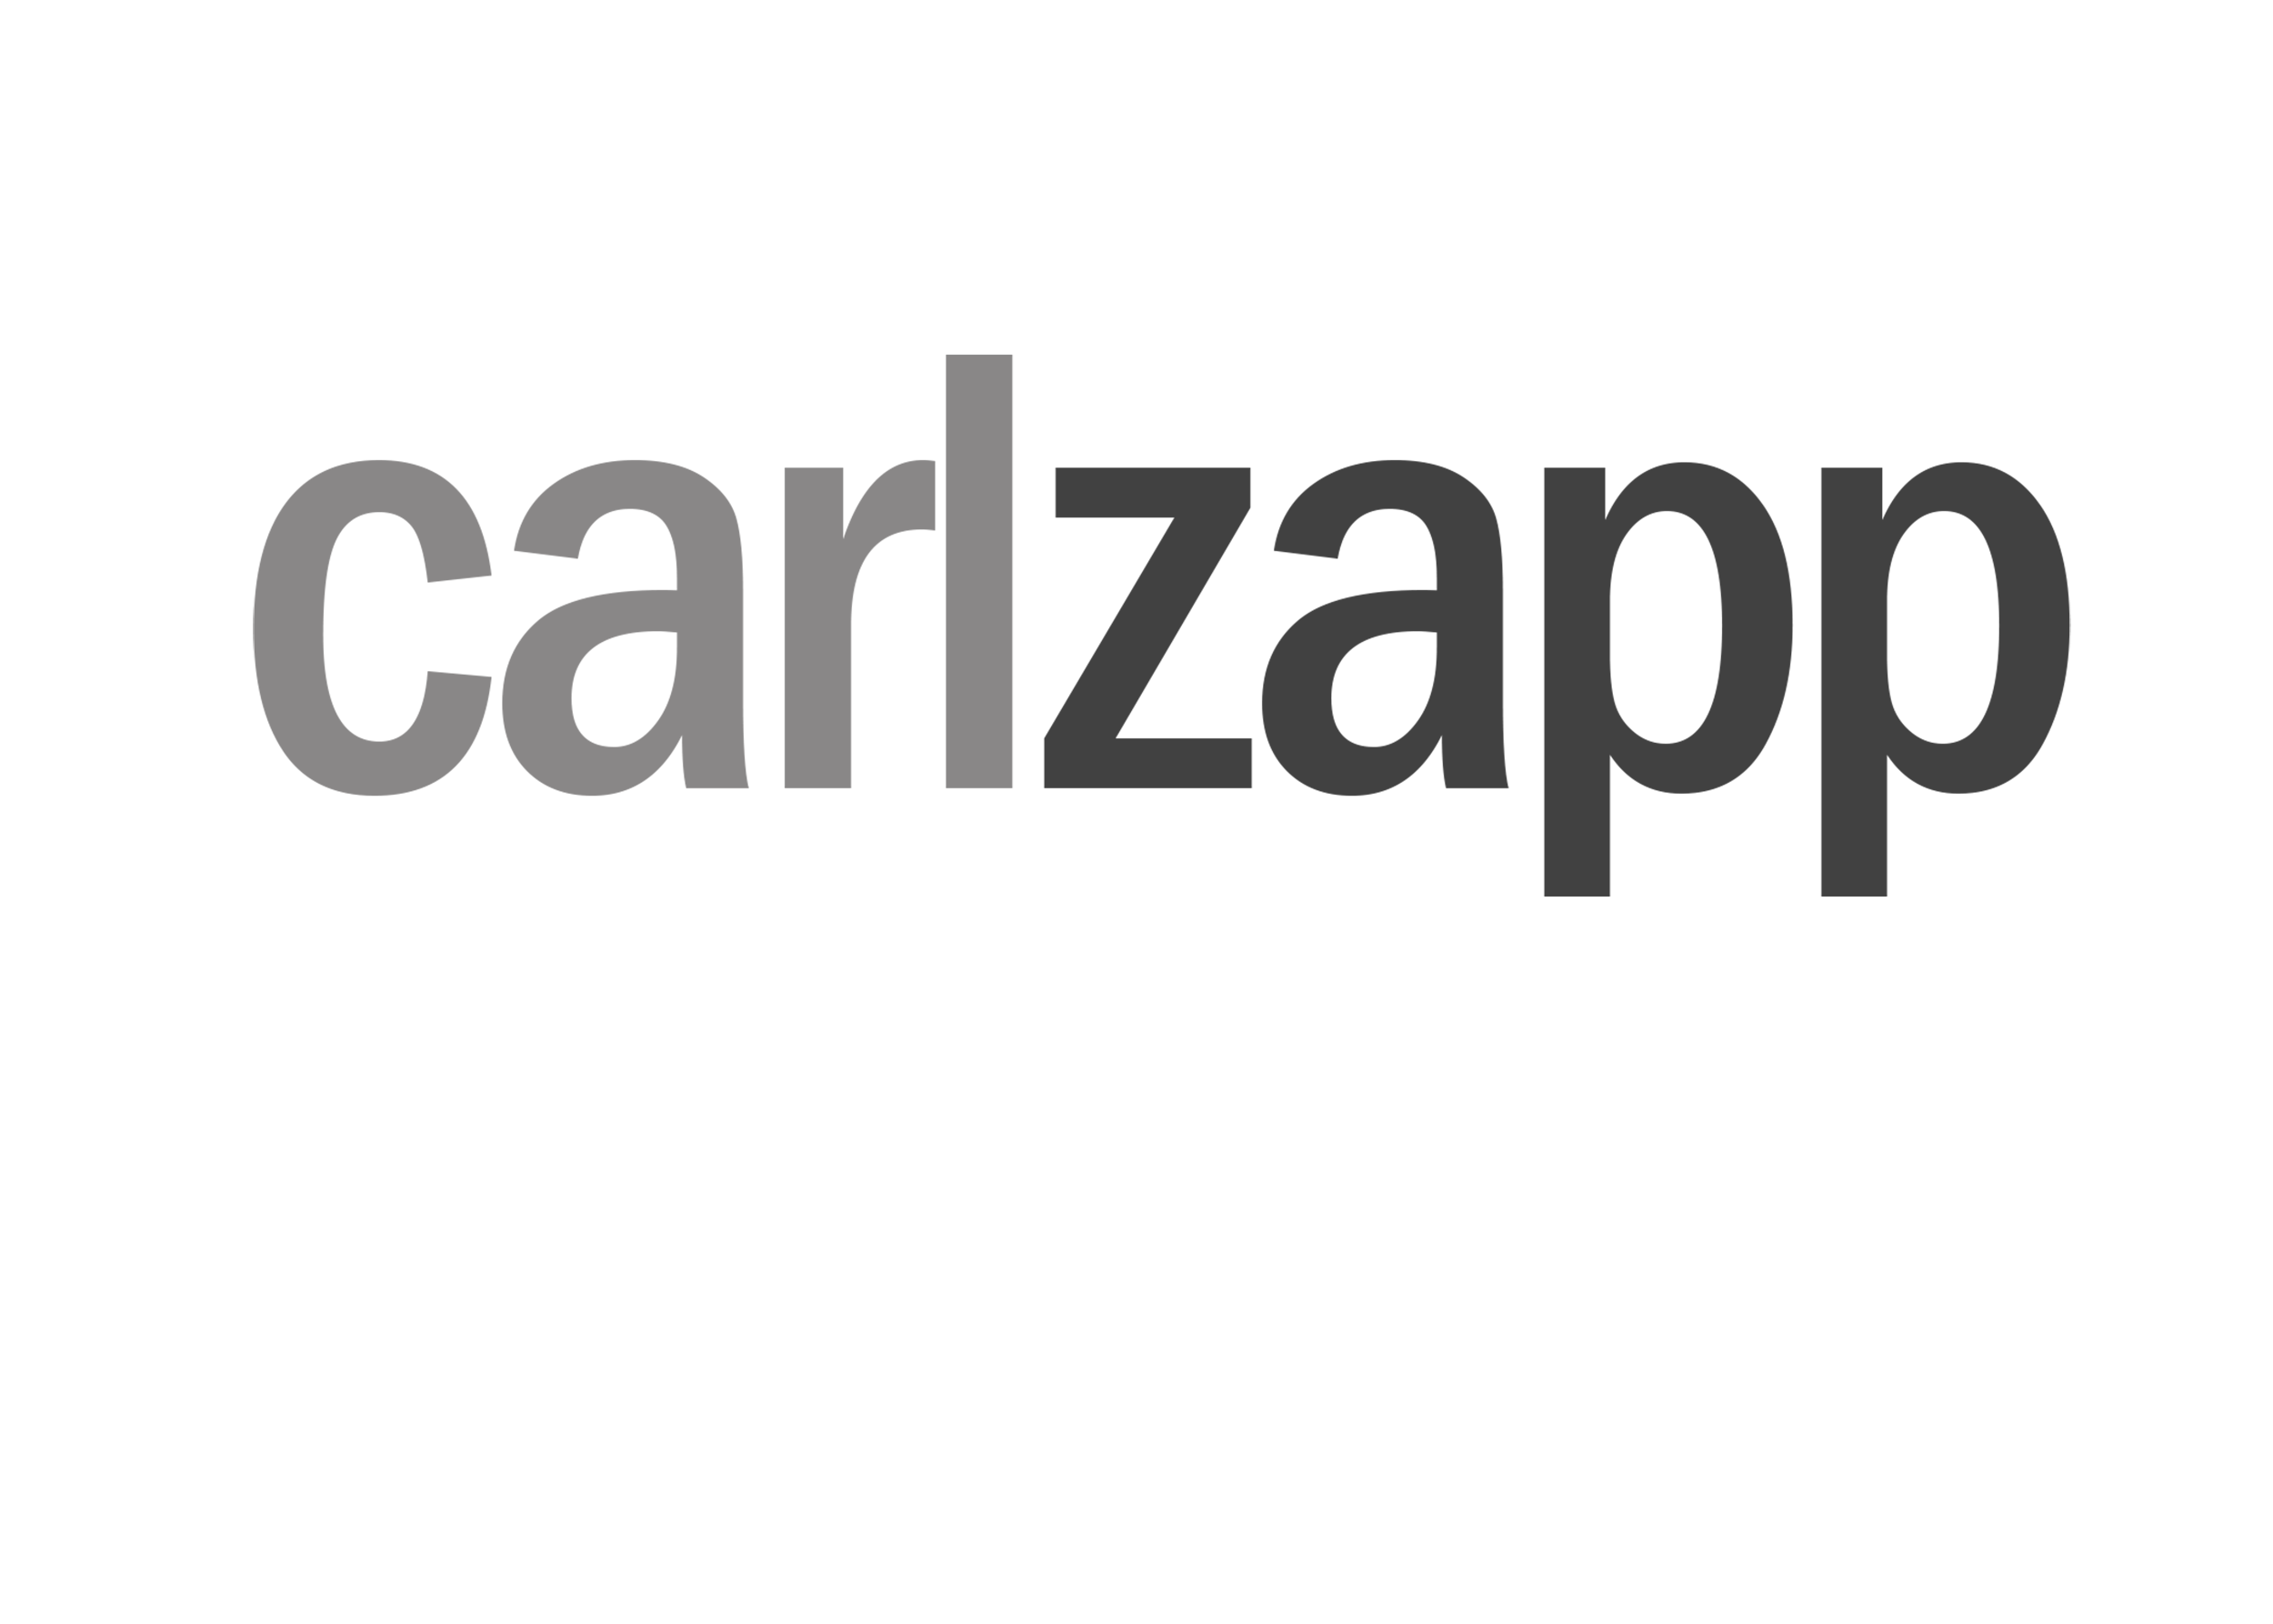 Carl Zapp